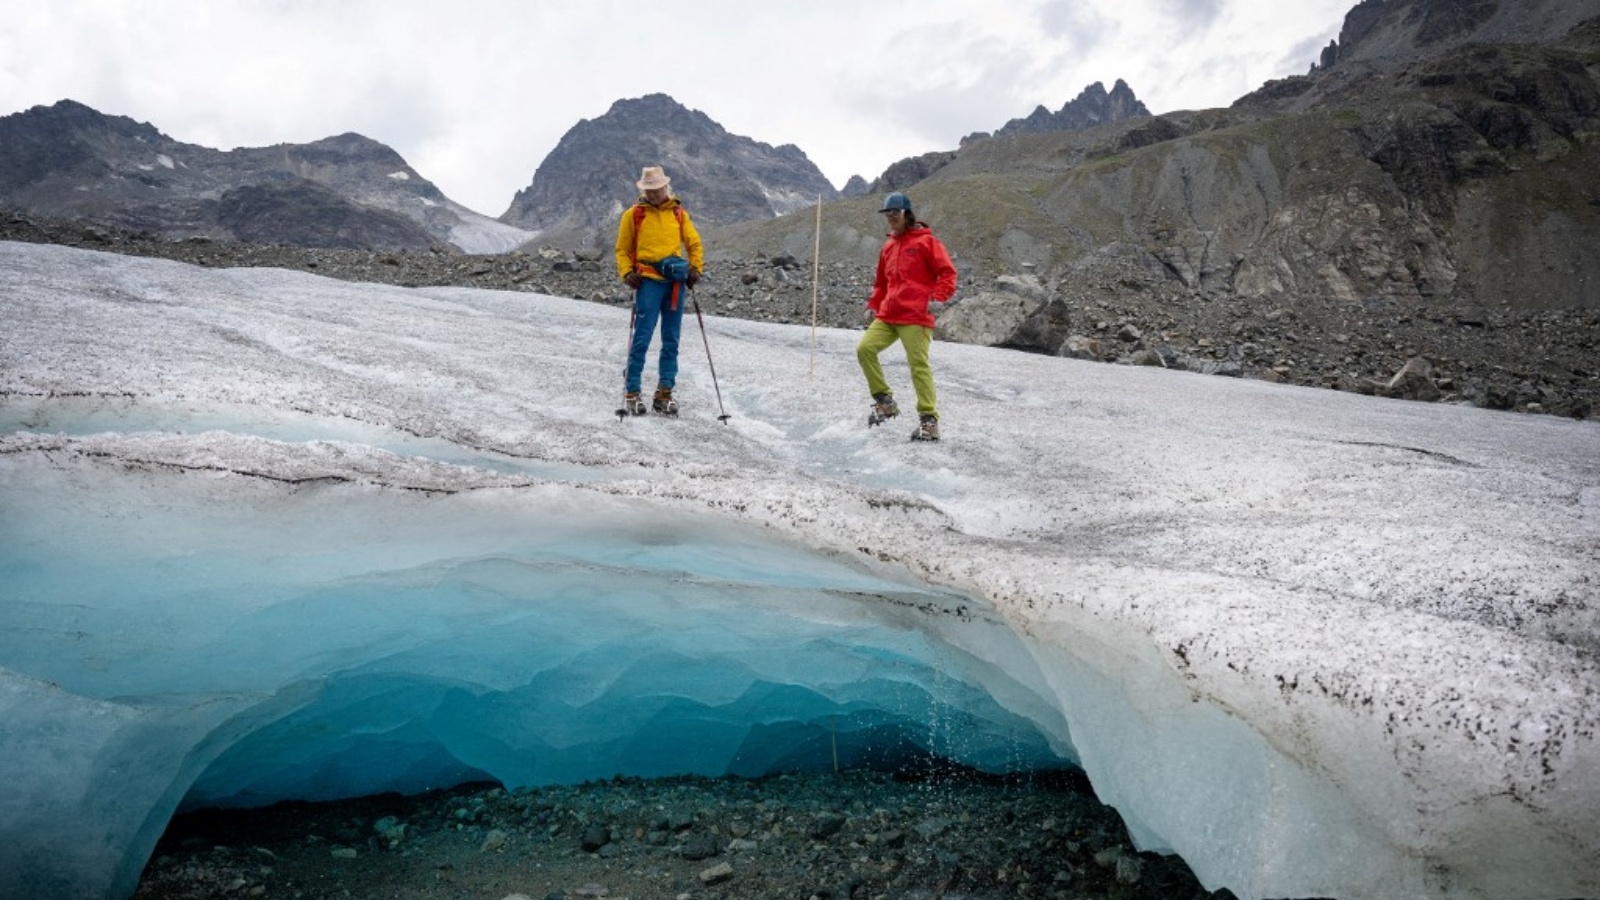 عالمتا الجليد أندريا فيشر (على اليسار) وفيوليتا لوريا من الأكاديمية النمساوية للعلوم يسيران على نهر جامتال الجليدي (جامتالفيرنر) بالقرب من جالتوير، تيرول، النمسا في 20 يوليو 2022